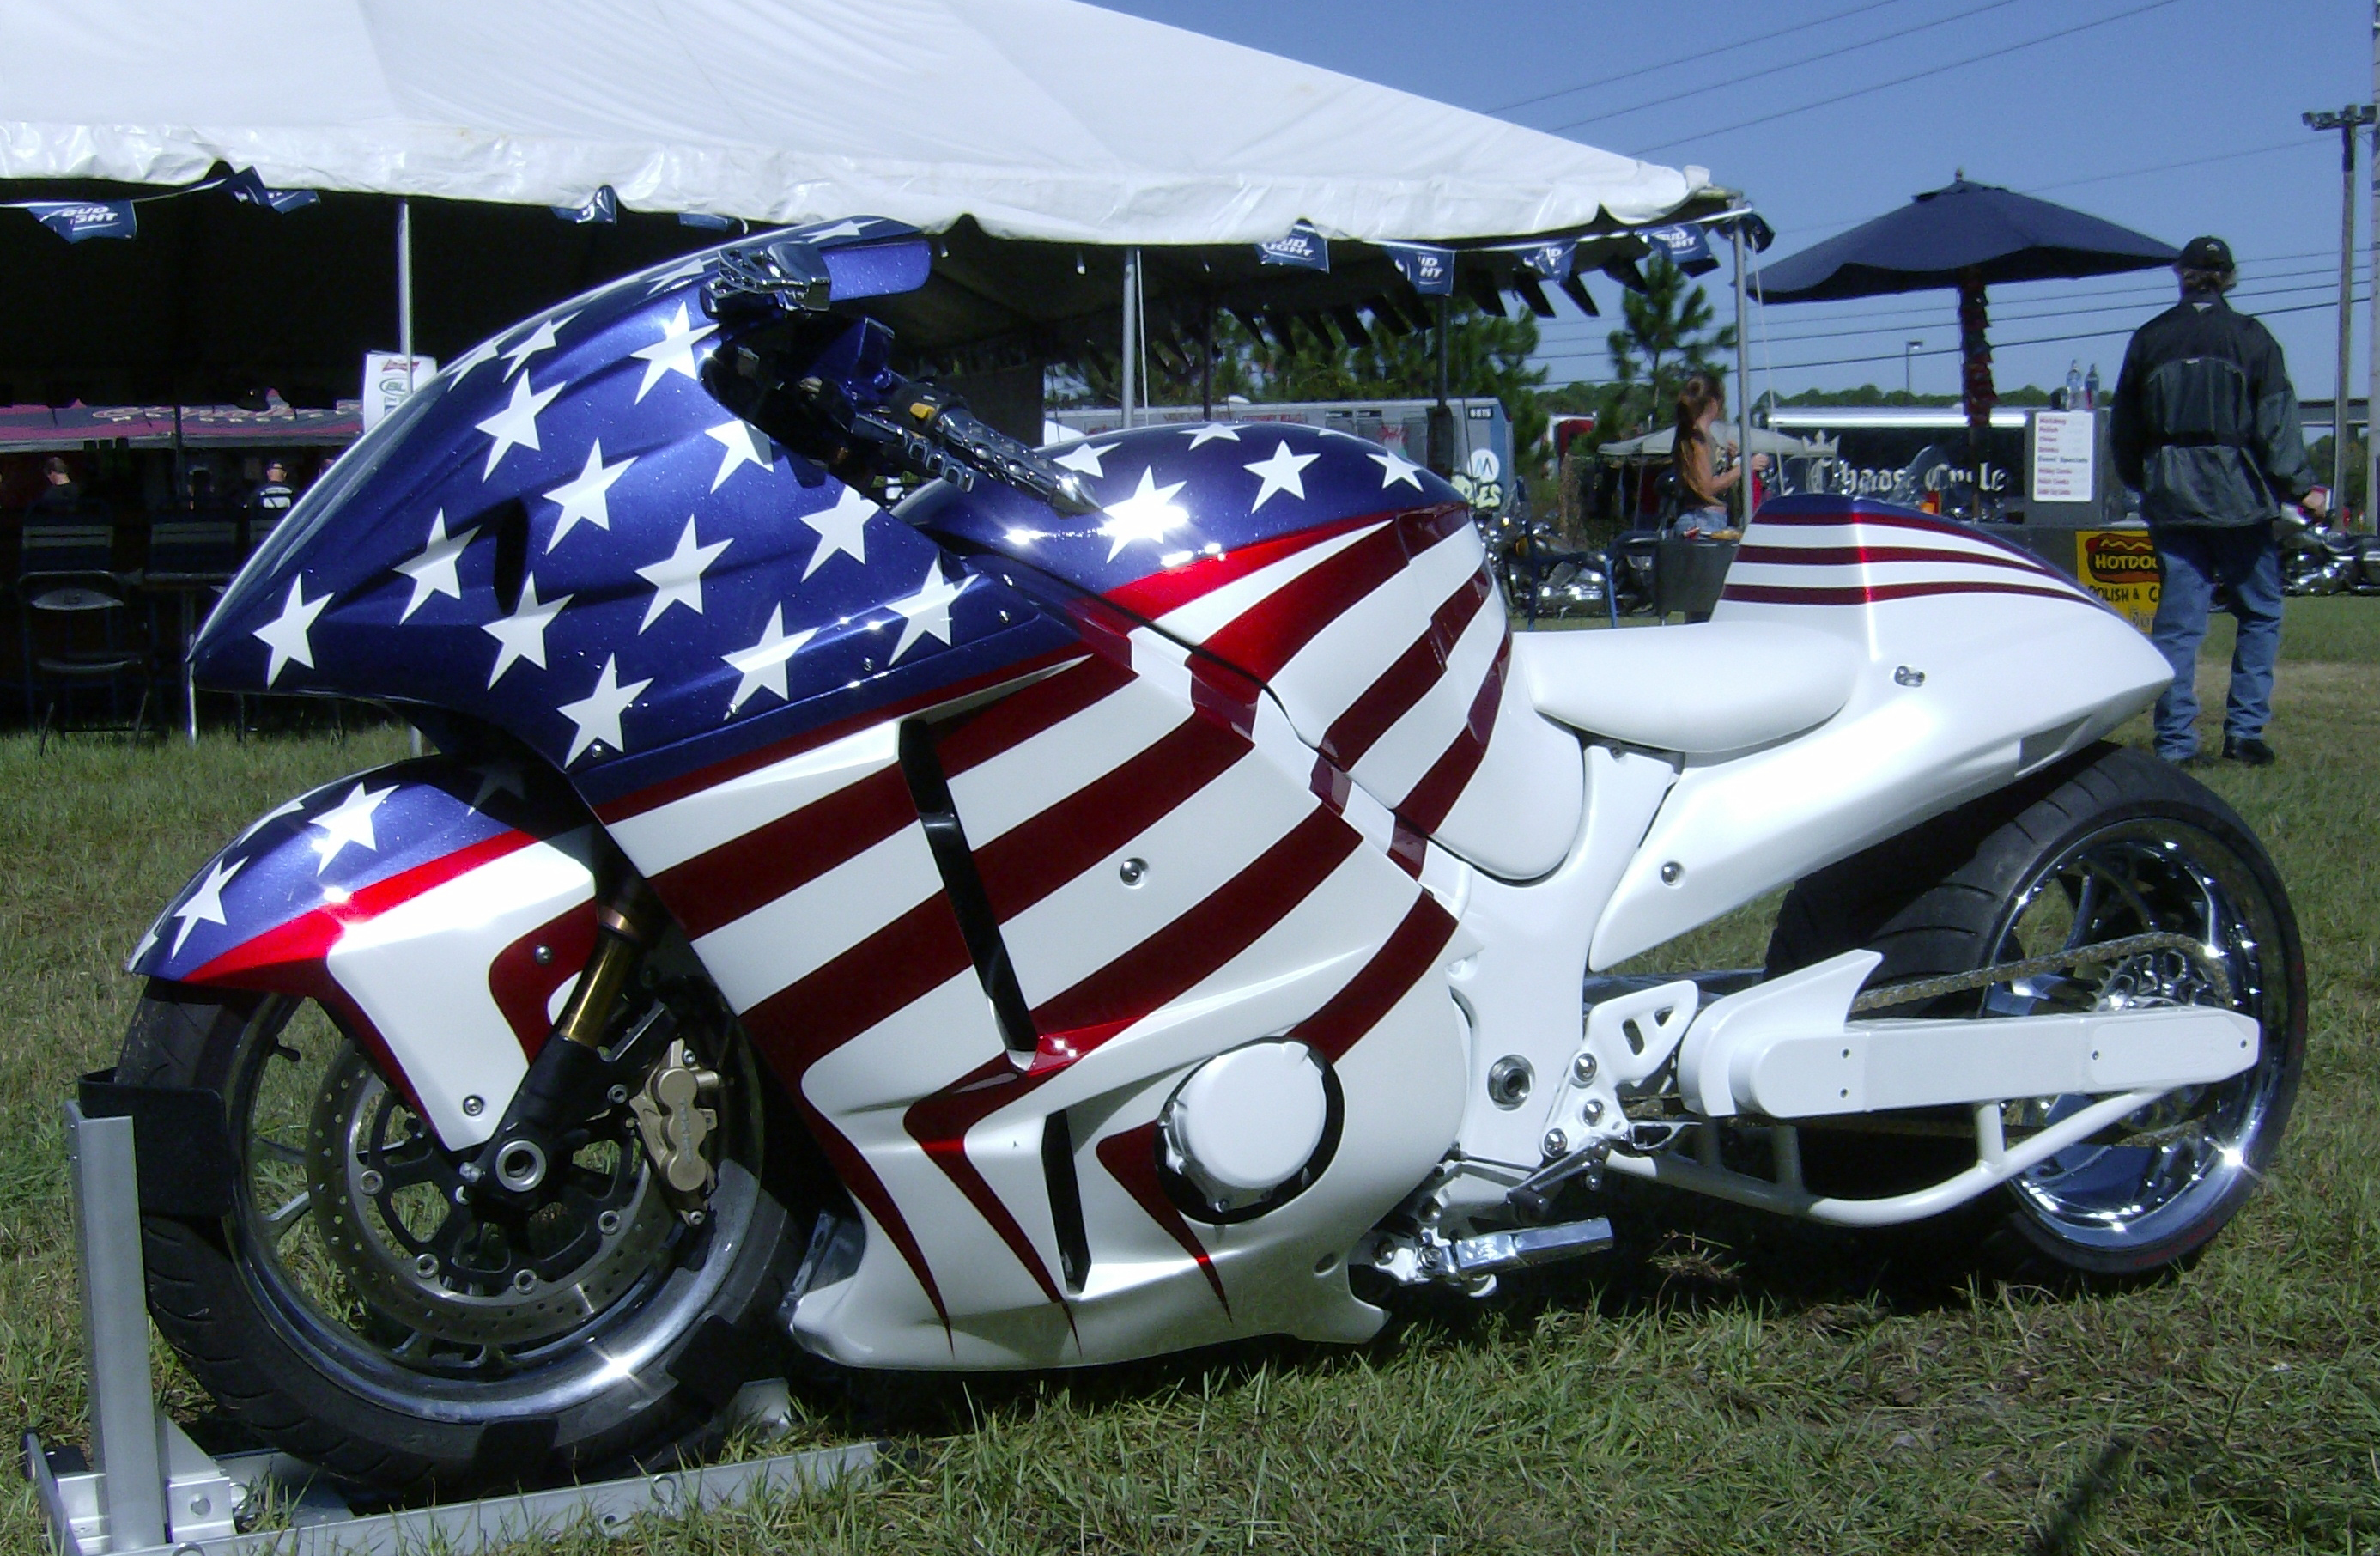 The Patriot bike